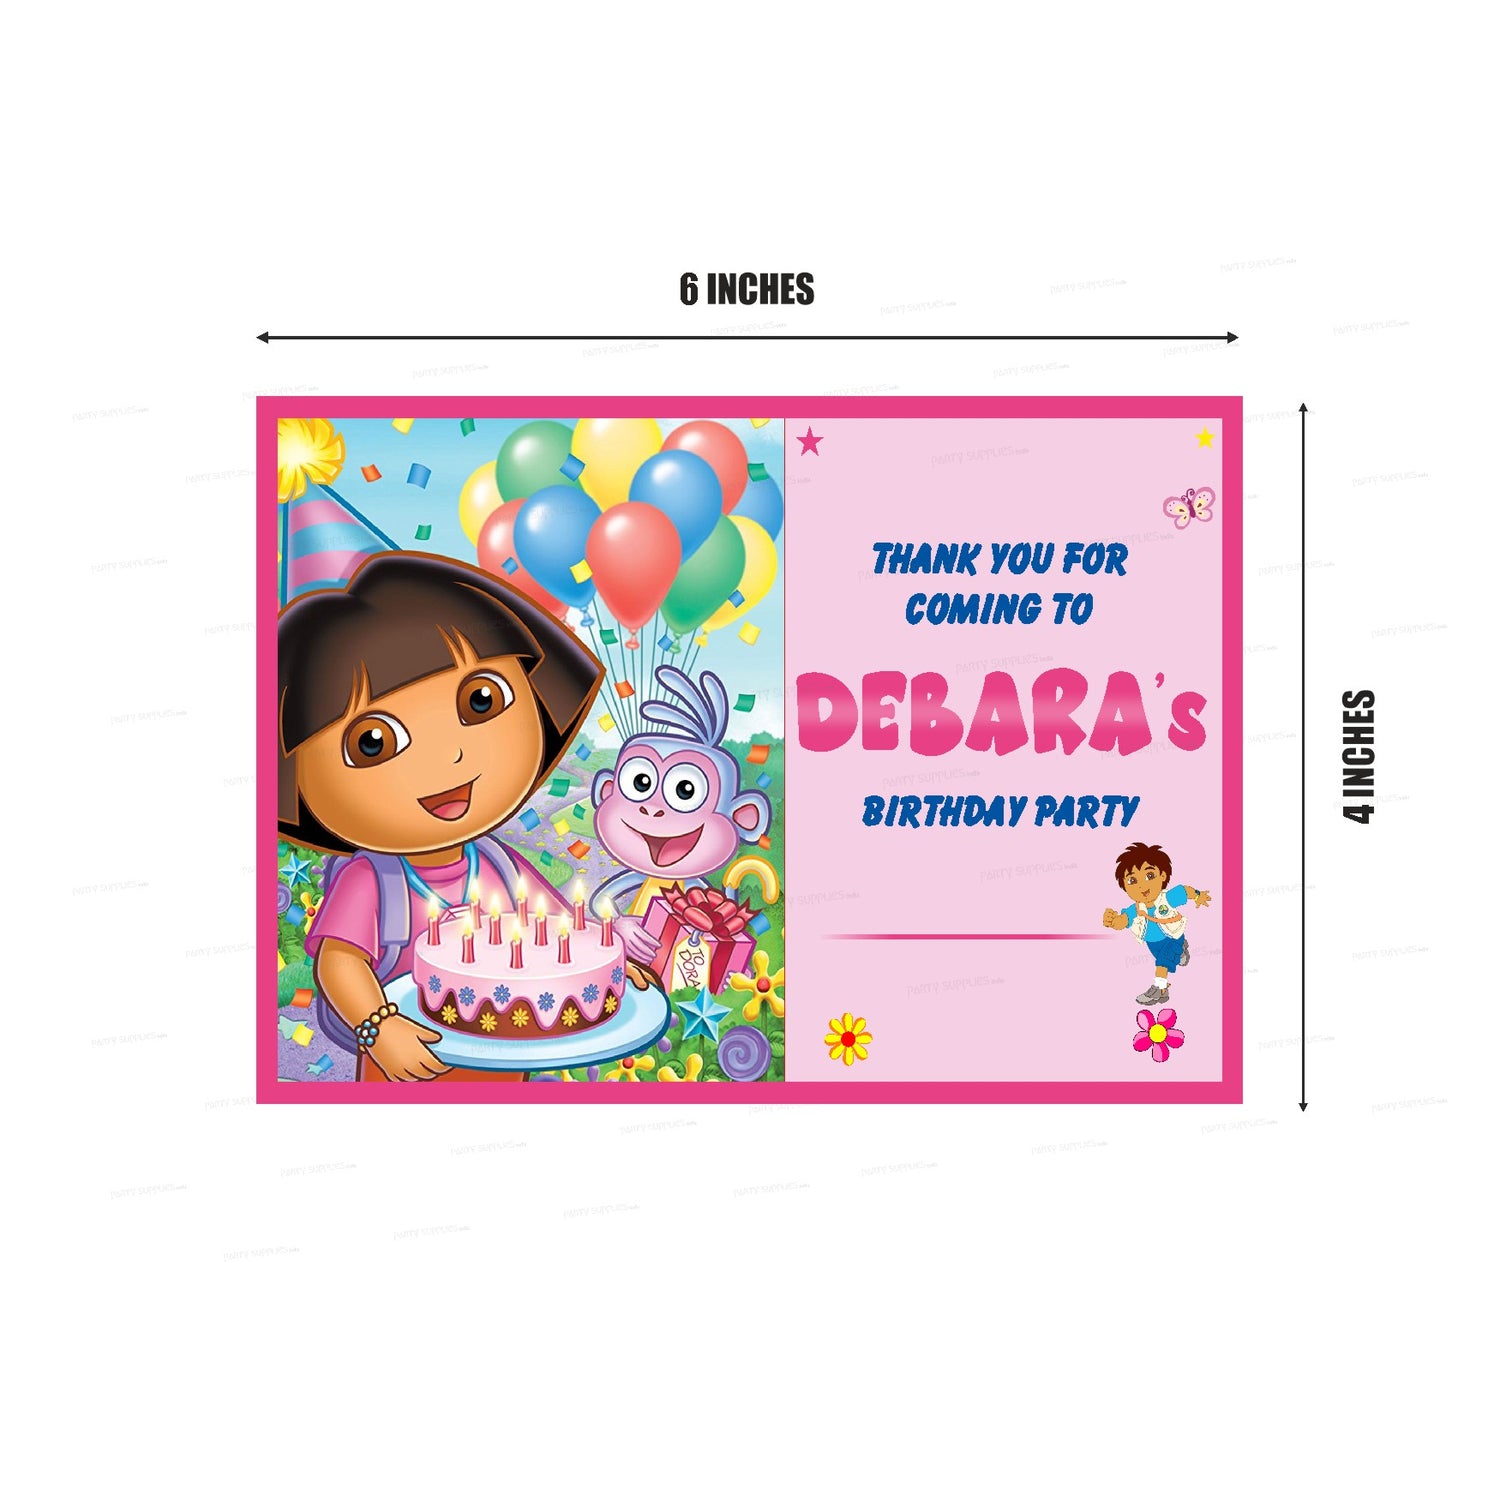 Dora the Explorer Thank You Card